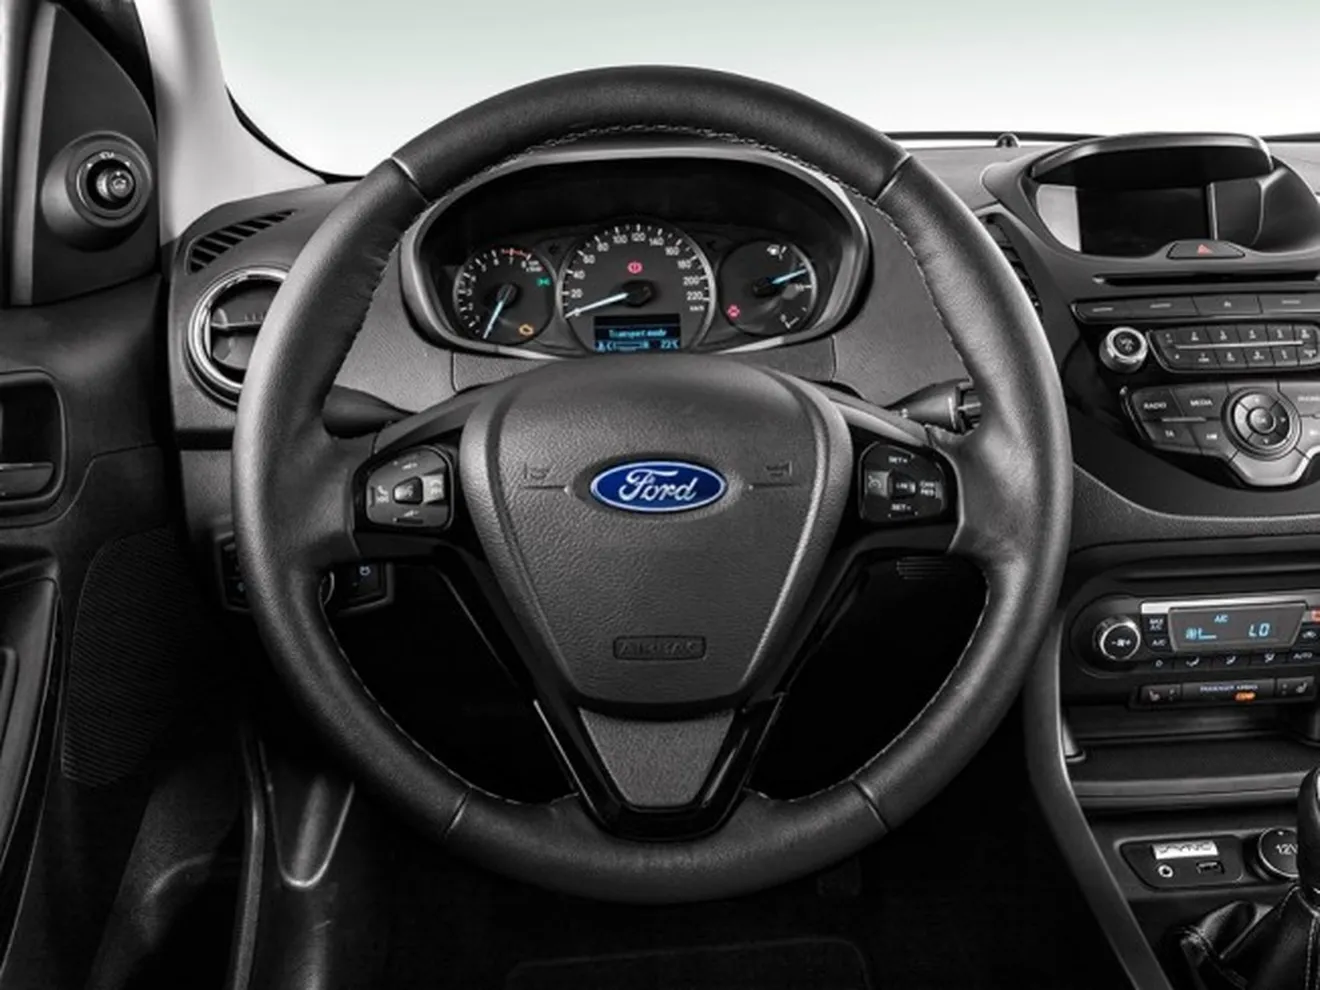 Ford KA+ - interior